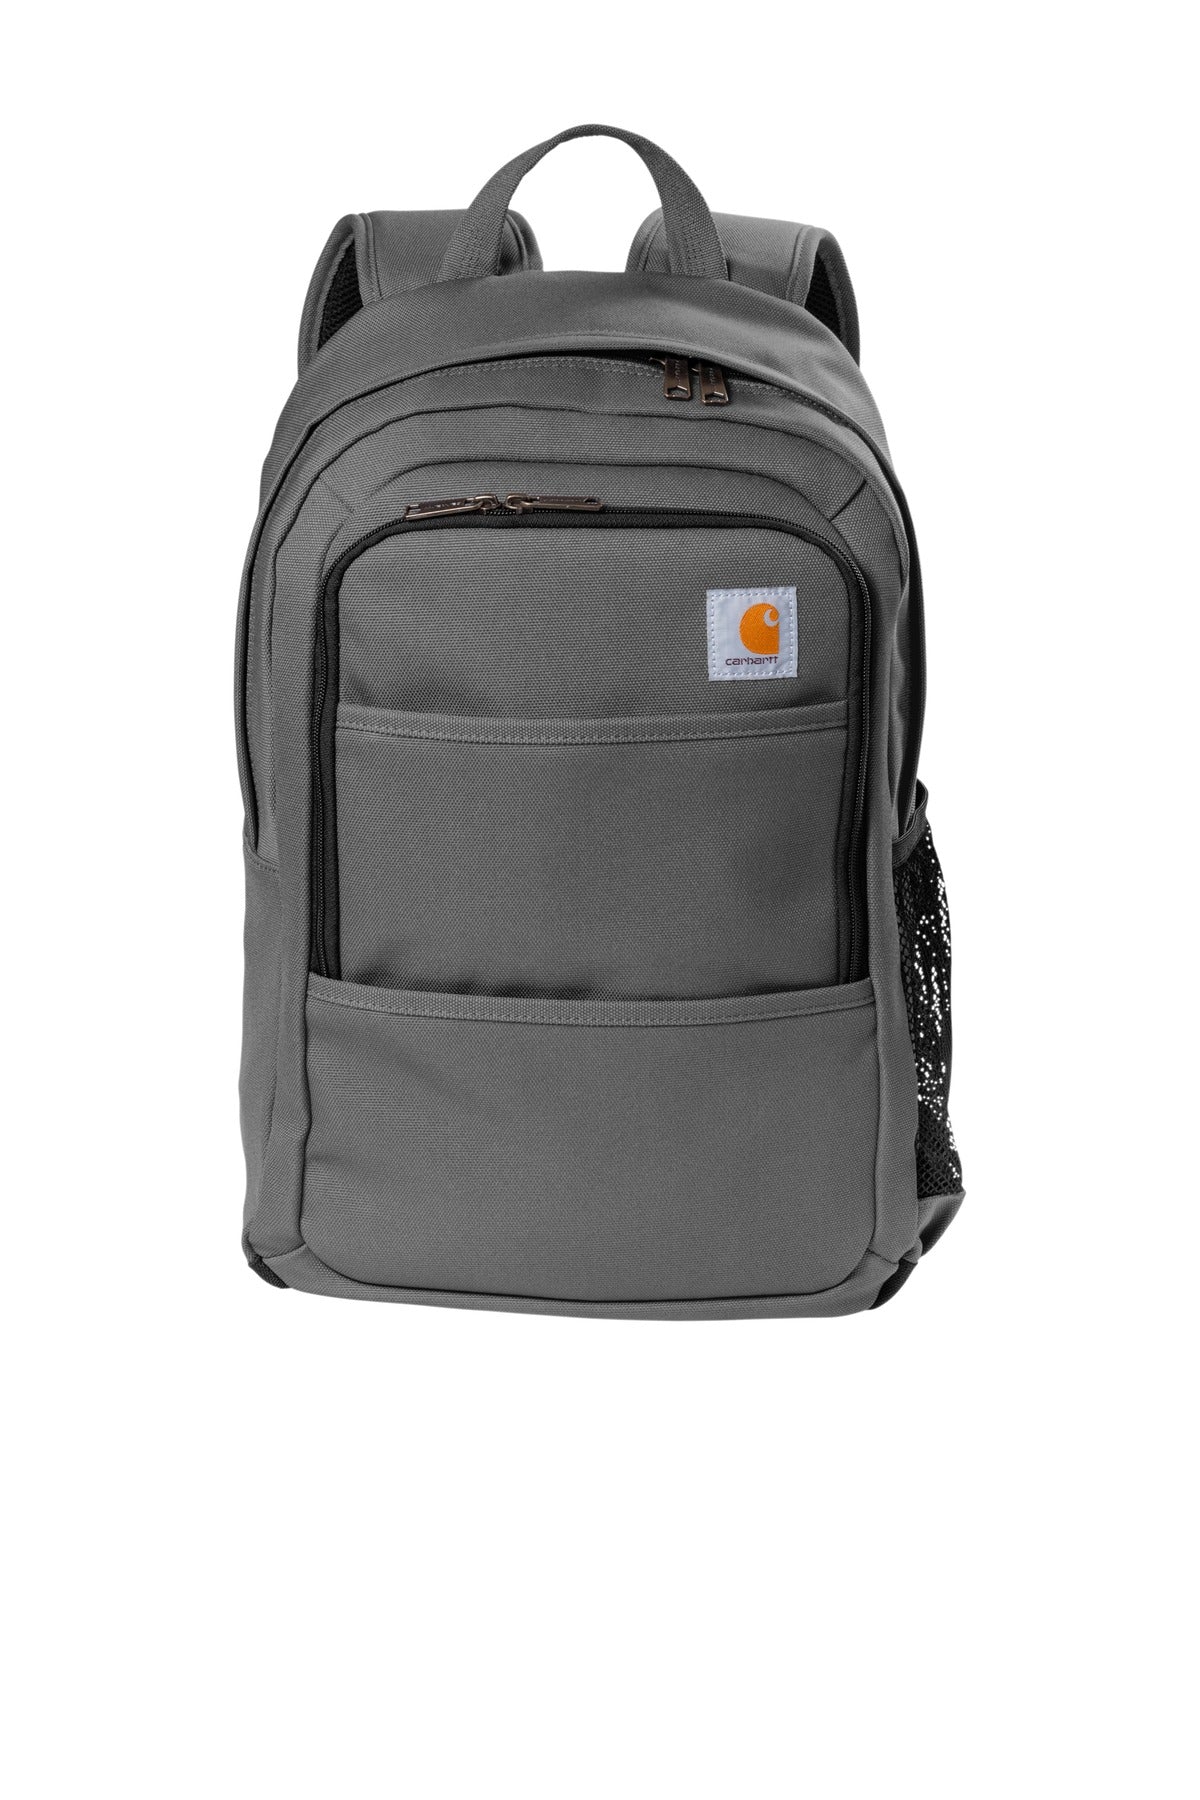 Bags Grey OSFA Carhartt